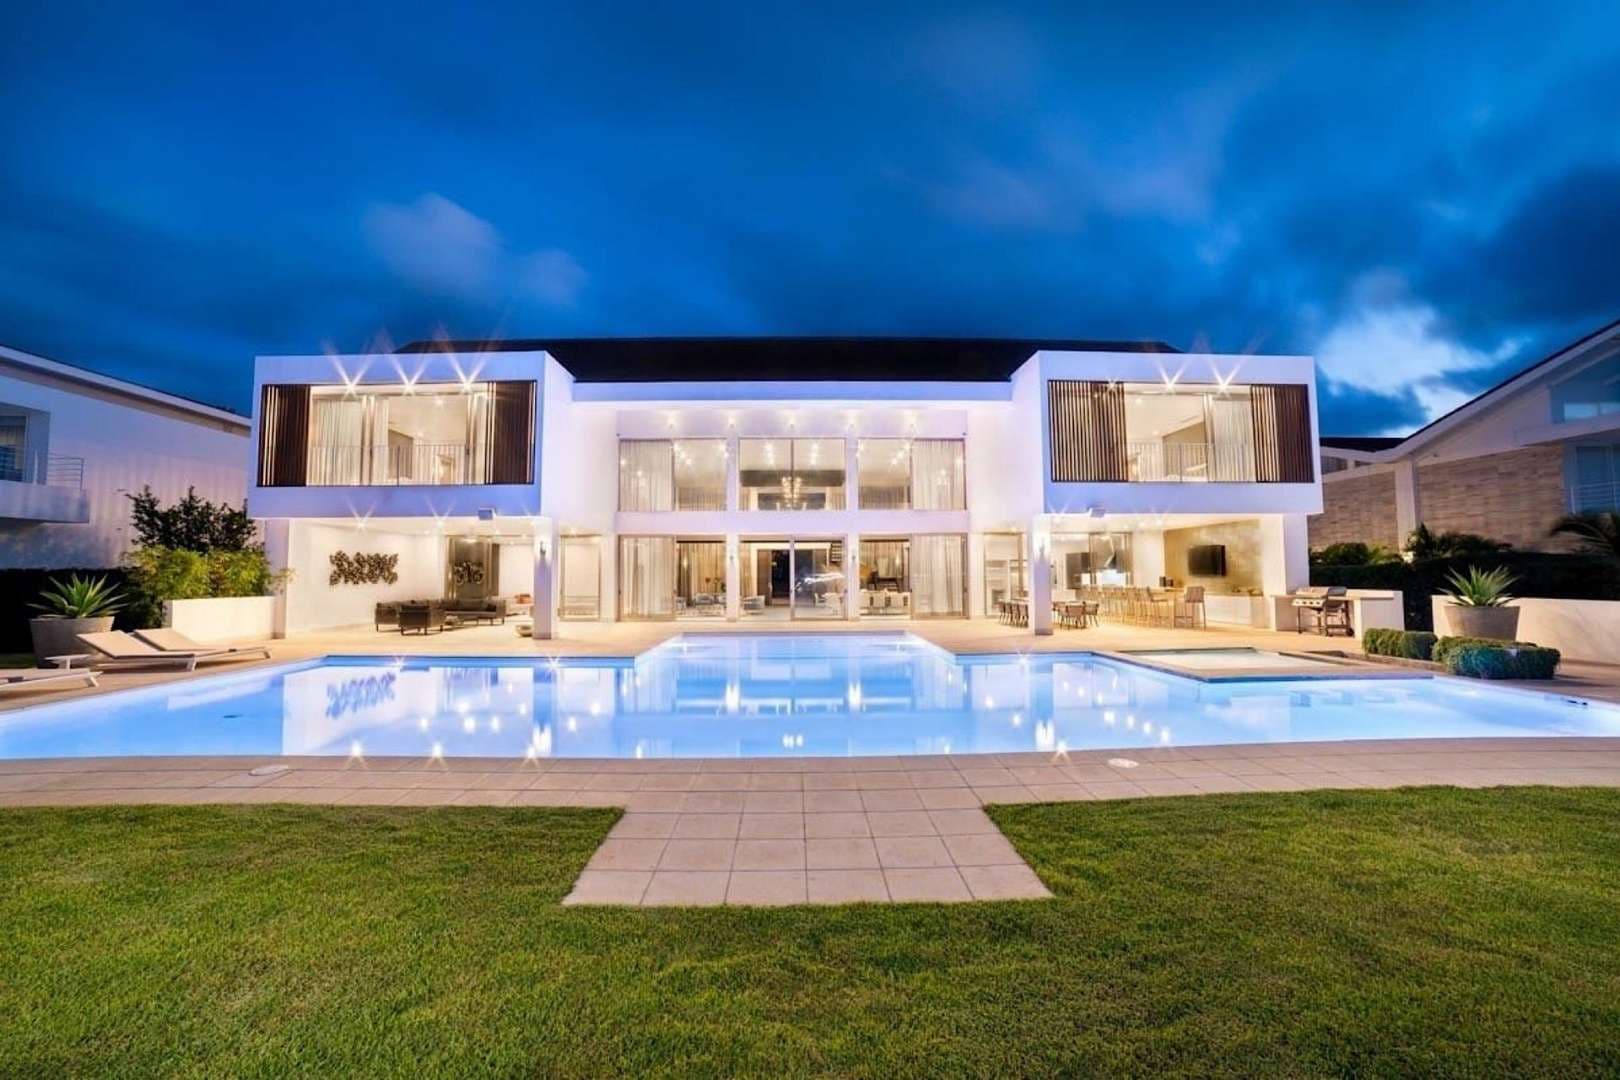 5 Bedroom Villa For Sale Villa Increible En Casa De Campo Lp05006 47fc7717cb81900.jpg